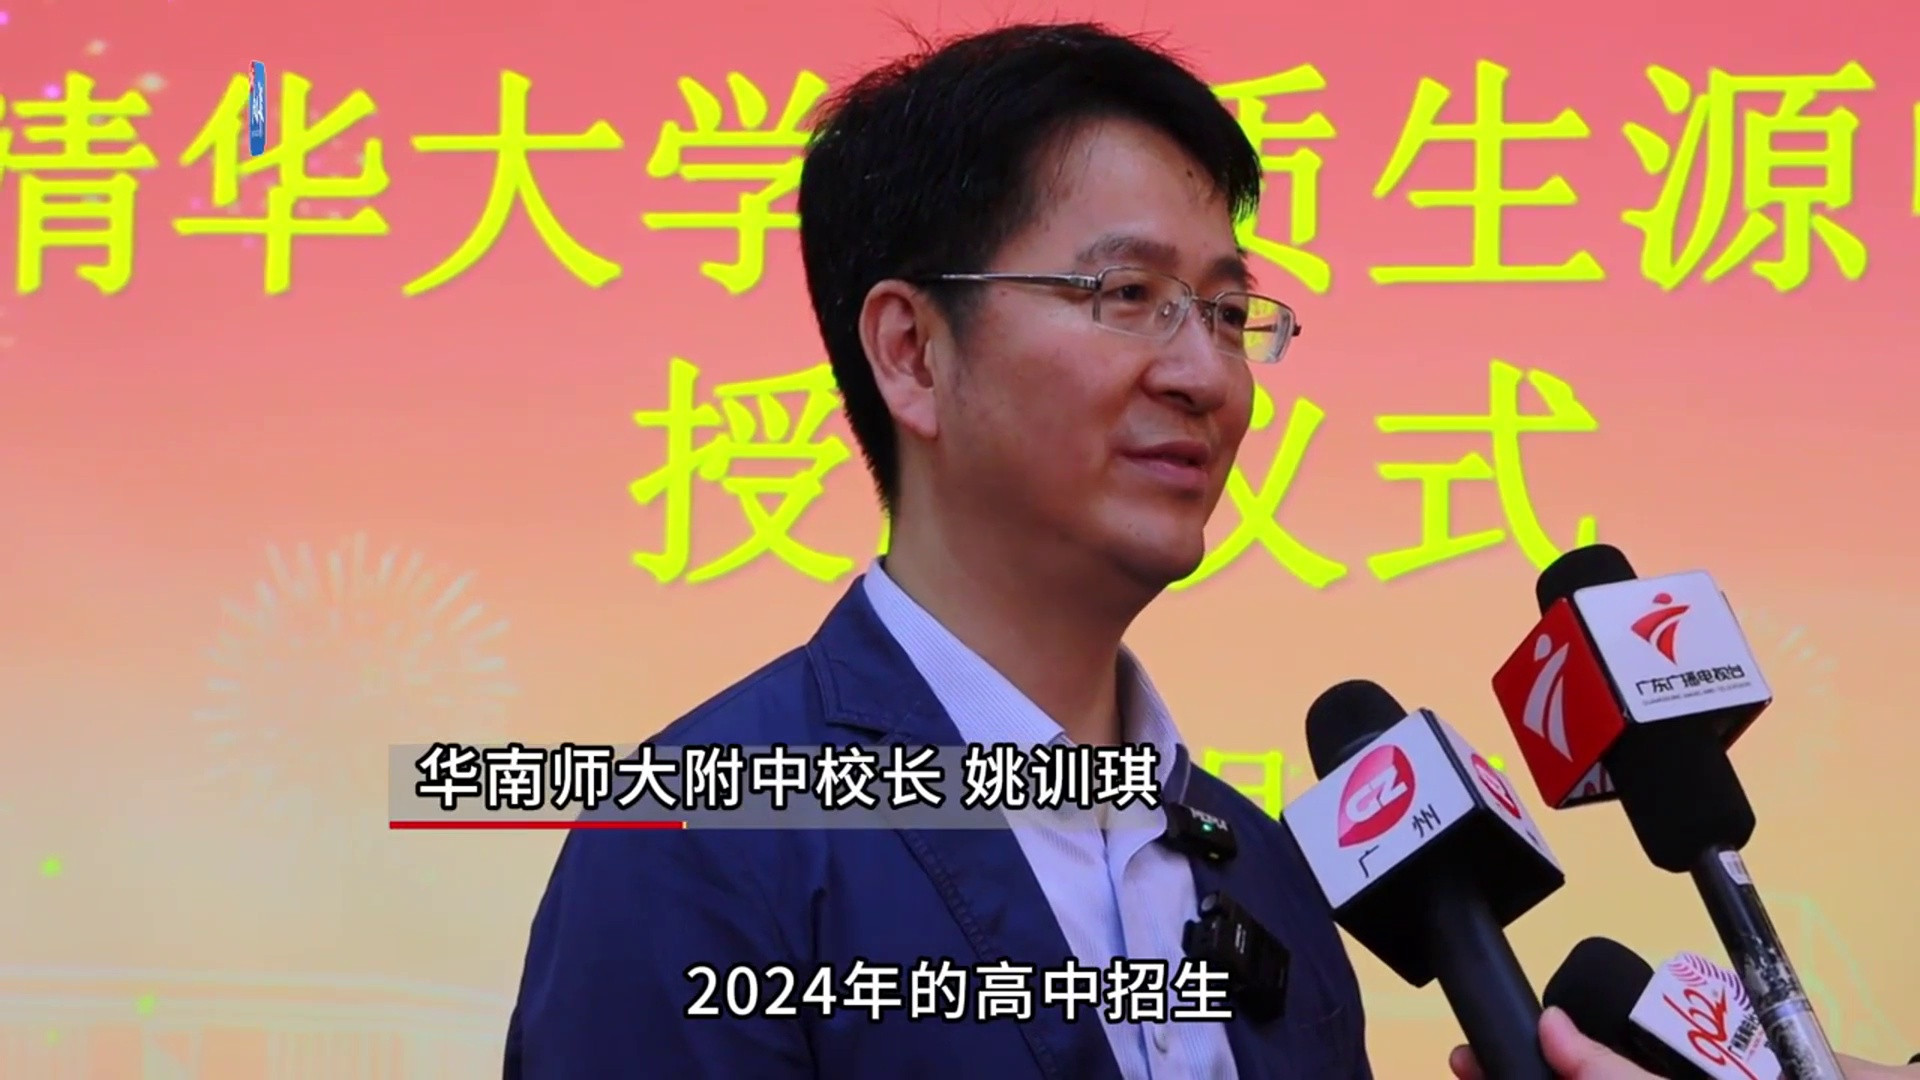 [视频]广州中考: 华附招生899人, 首招偏人文方向的大学先修班|隽言教育